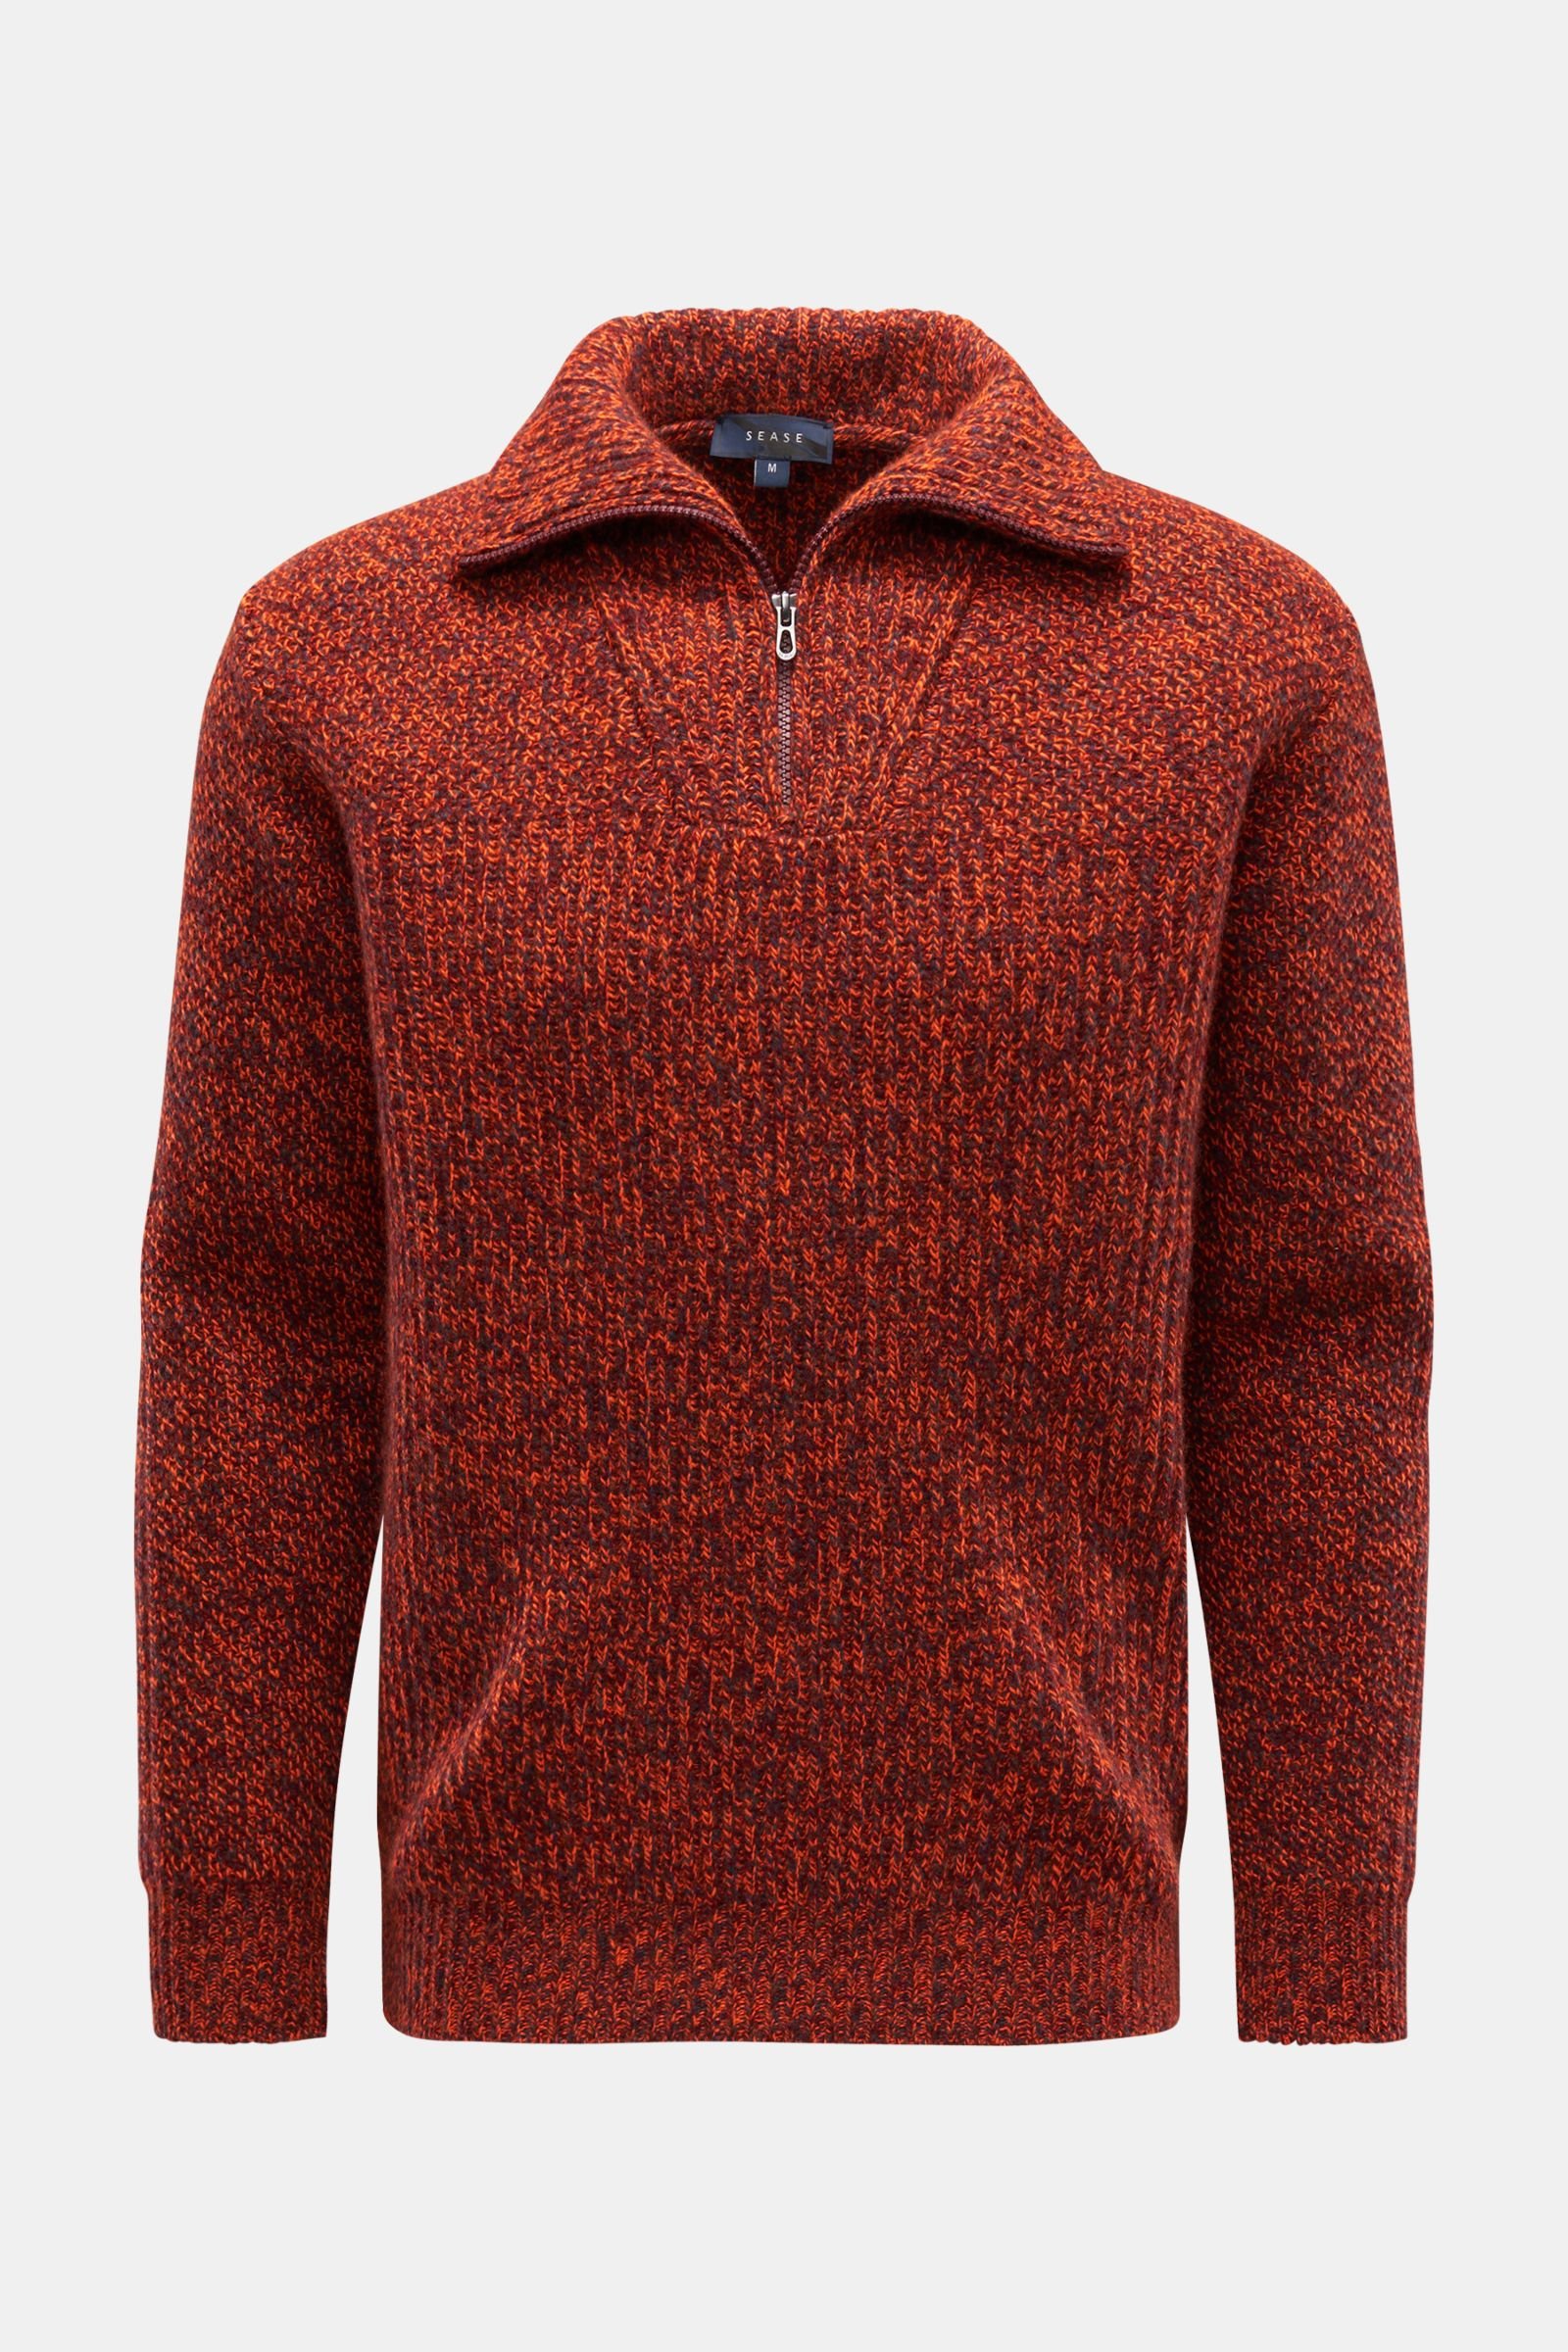 Cashmere half-zip jumper orange/burgundy/navy patterned